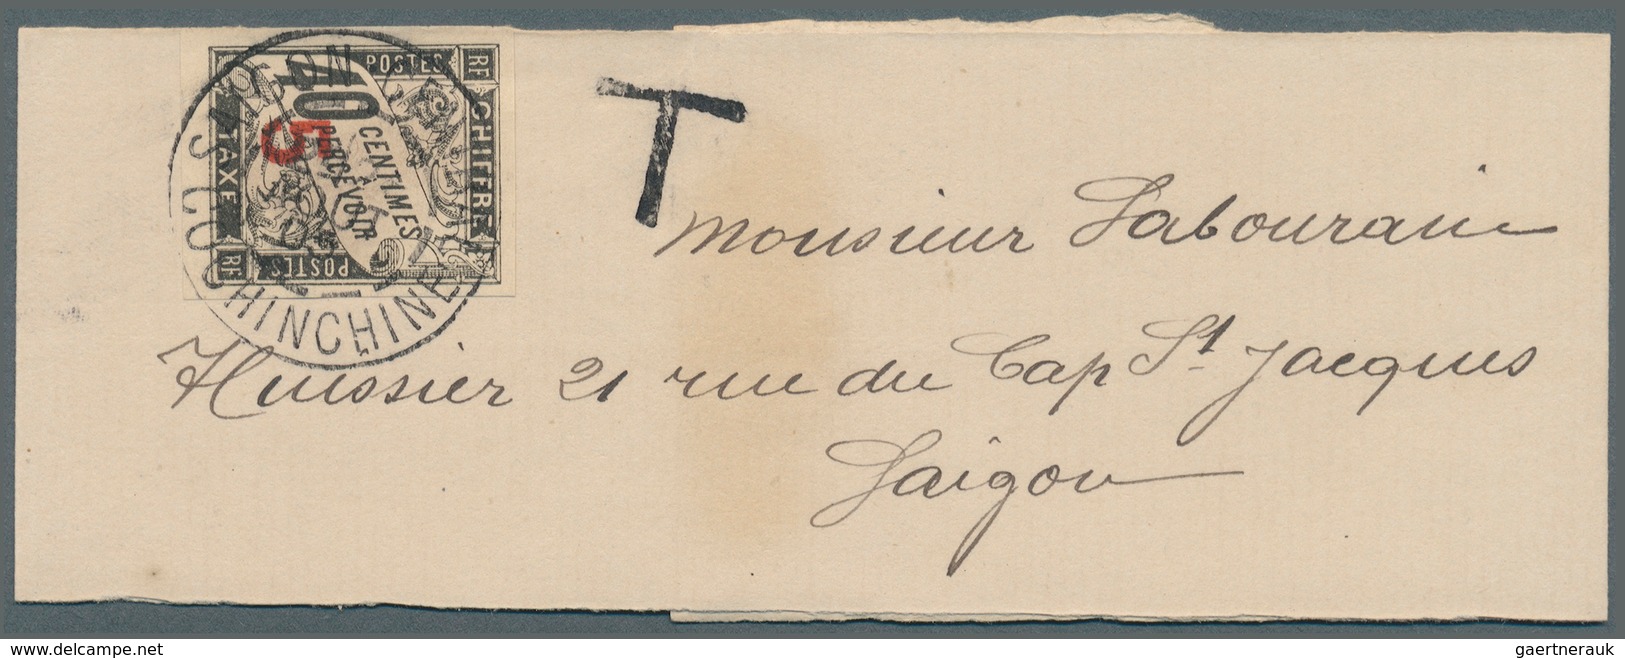 Französisch-Indochina - Portomarken: 1905. News-Band Wrapper Addressed To Saigon Bearing Indo-China - Portomarken